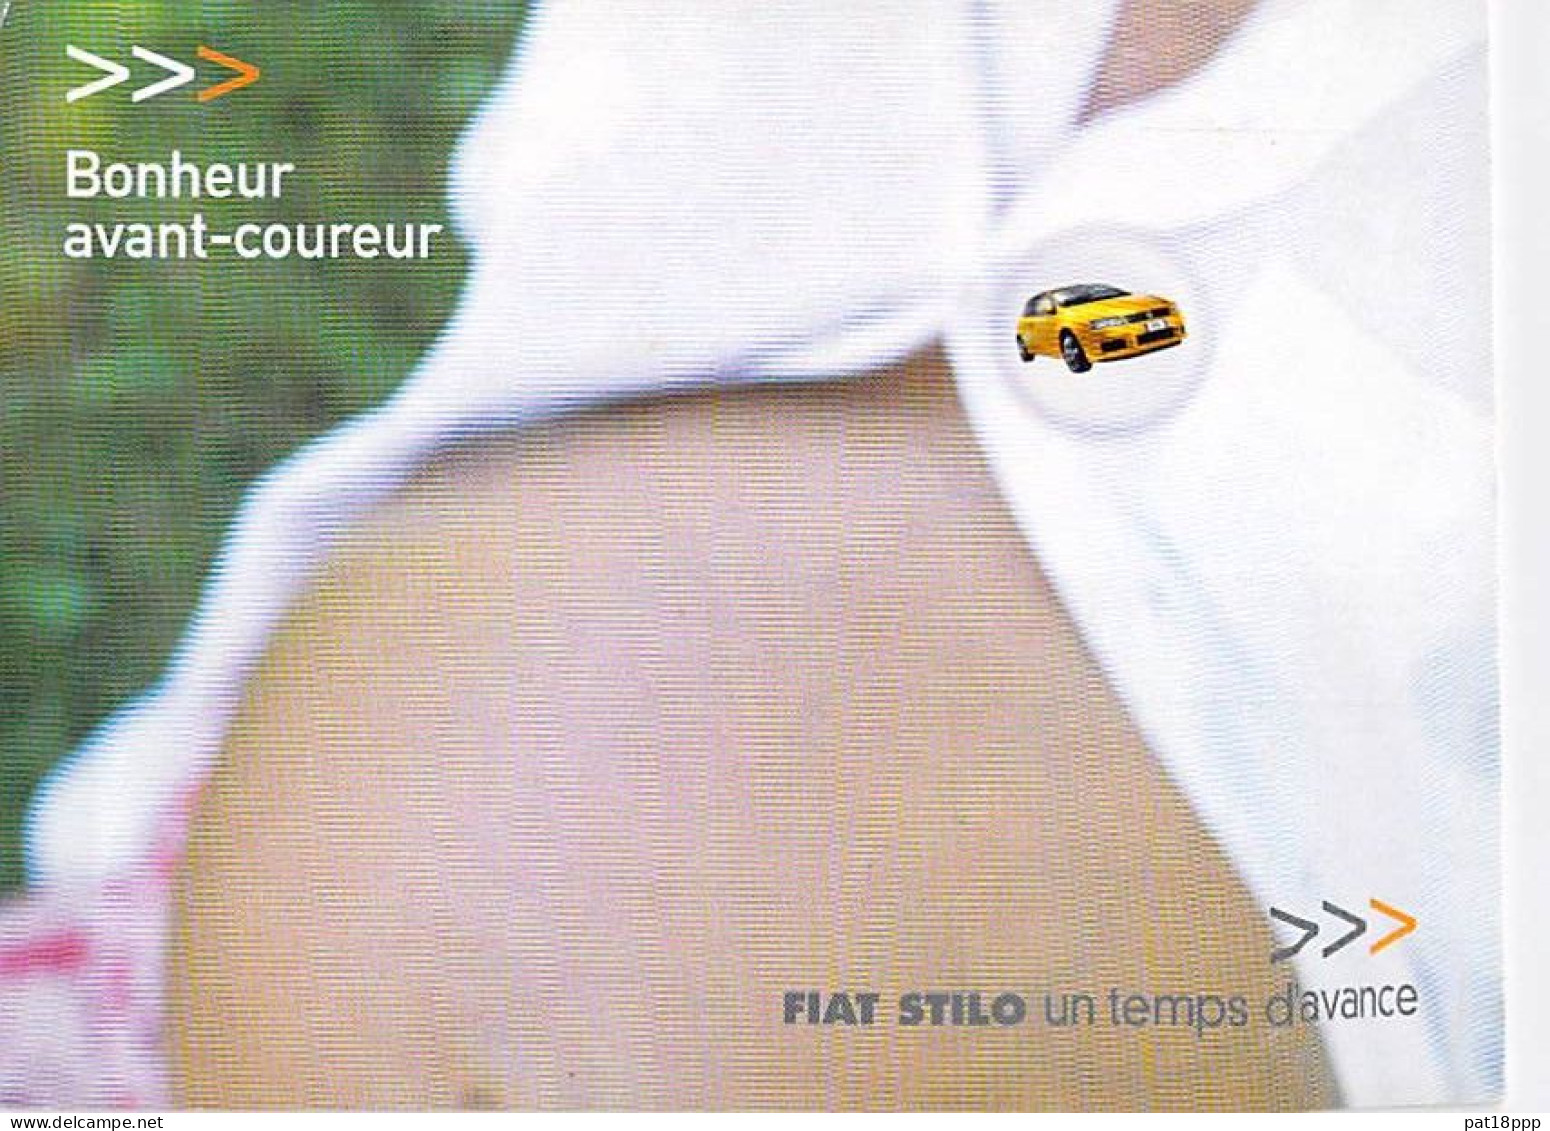 Lot de 15 cartes - VOITURES : Cartes Publicitaires PUB - CPSM-CPM GF (0.10 €/carte) automobile car automobili